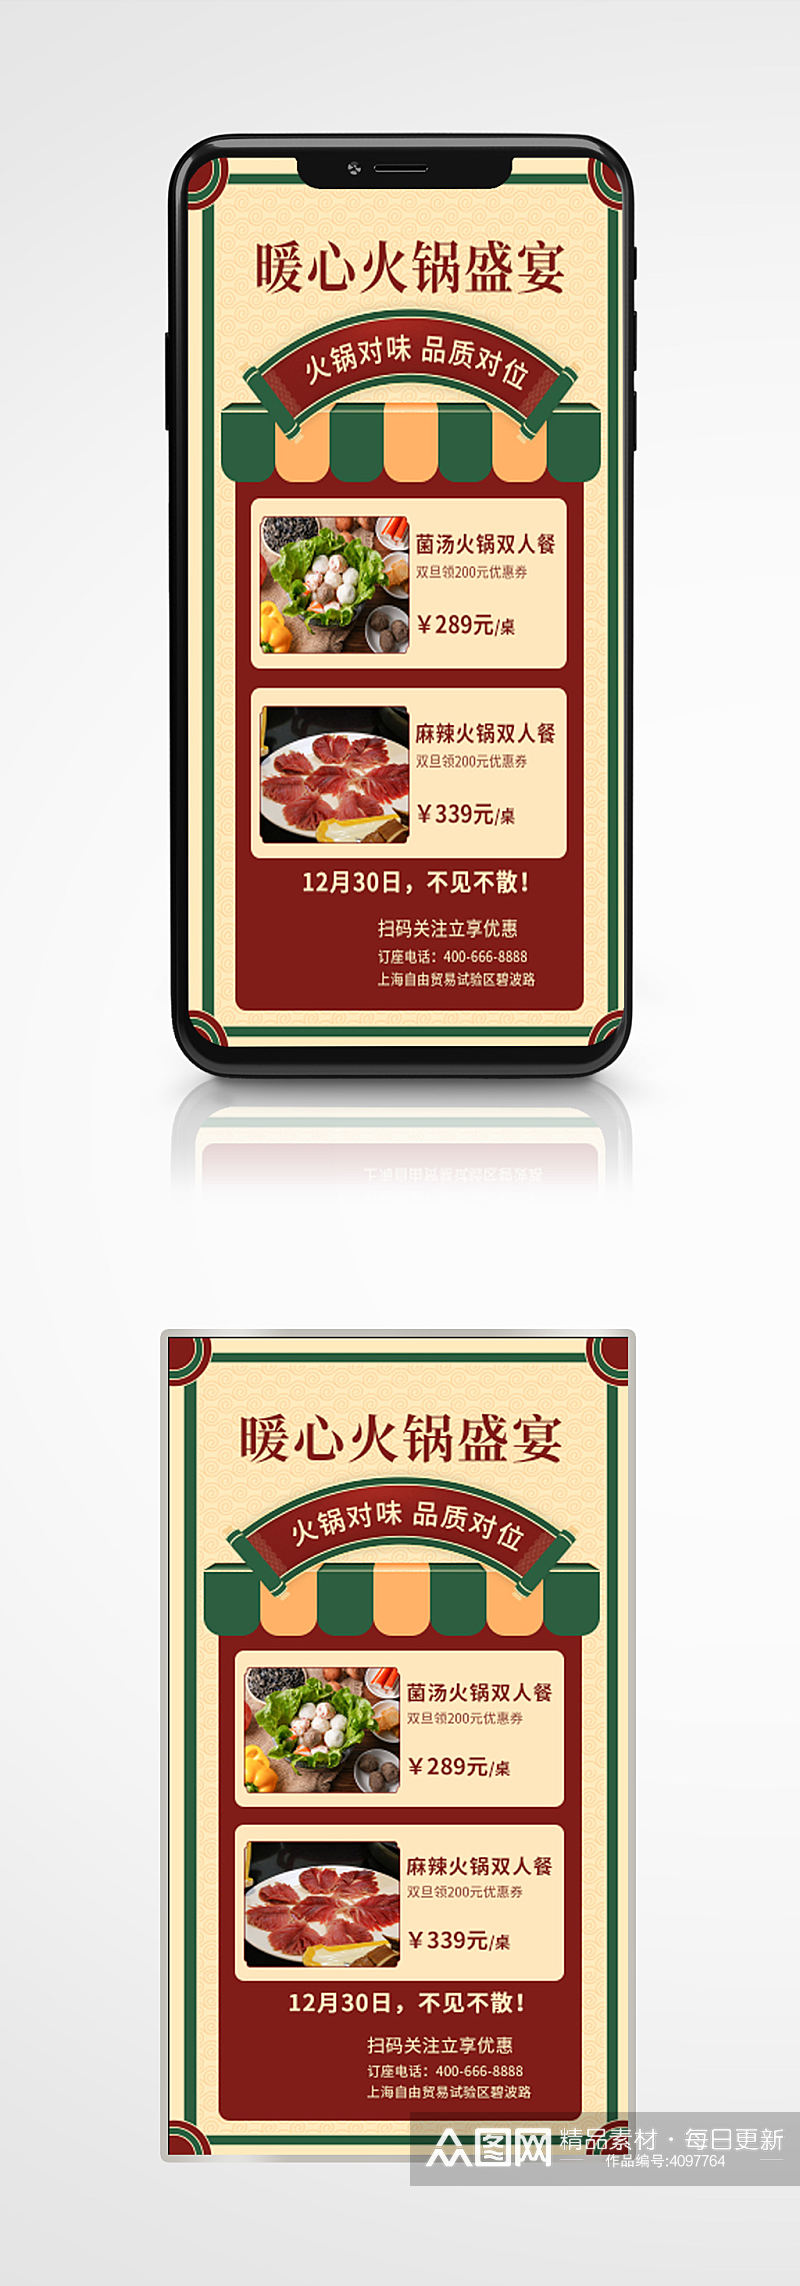 火锅烧烤自助餐美食手机海报餐厅套餐素材